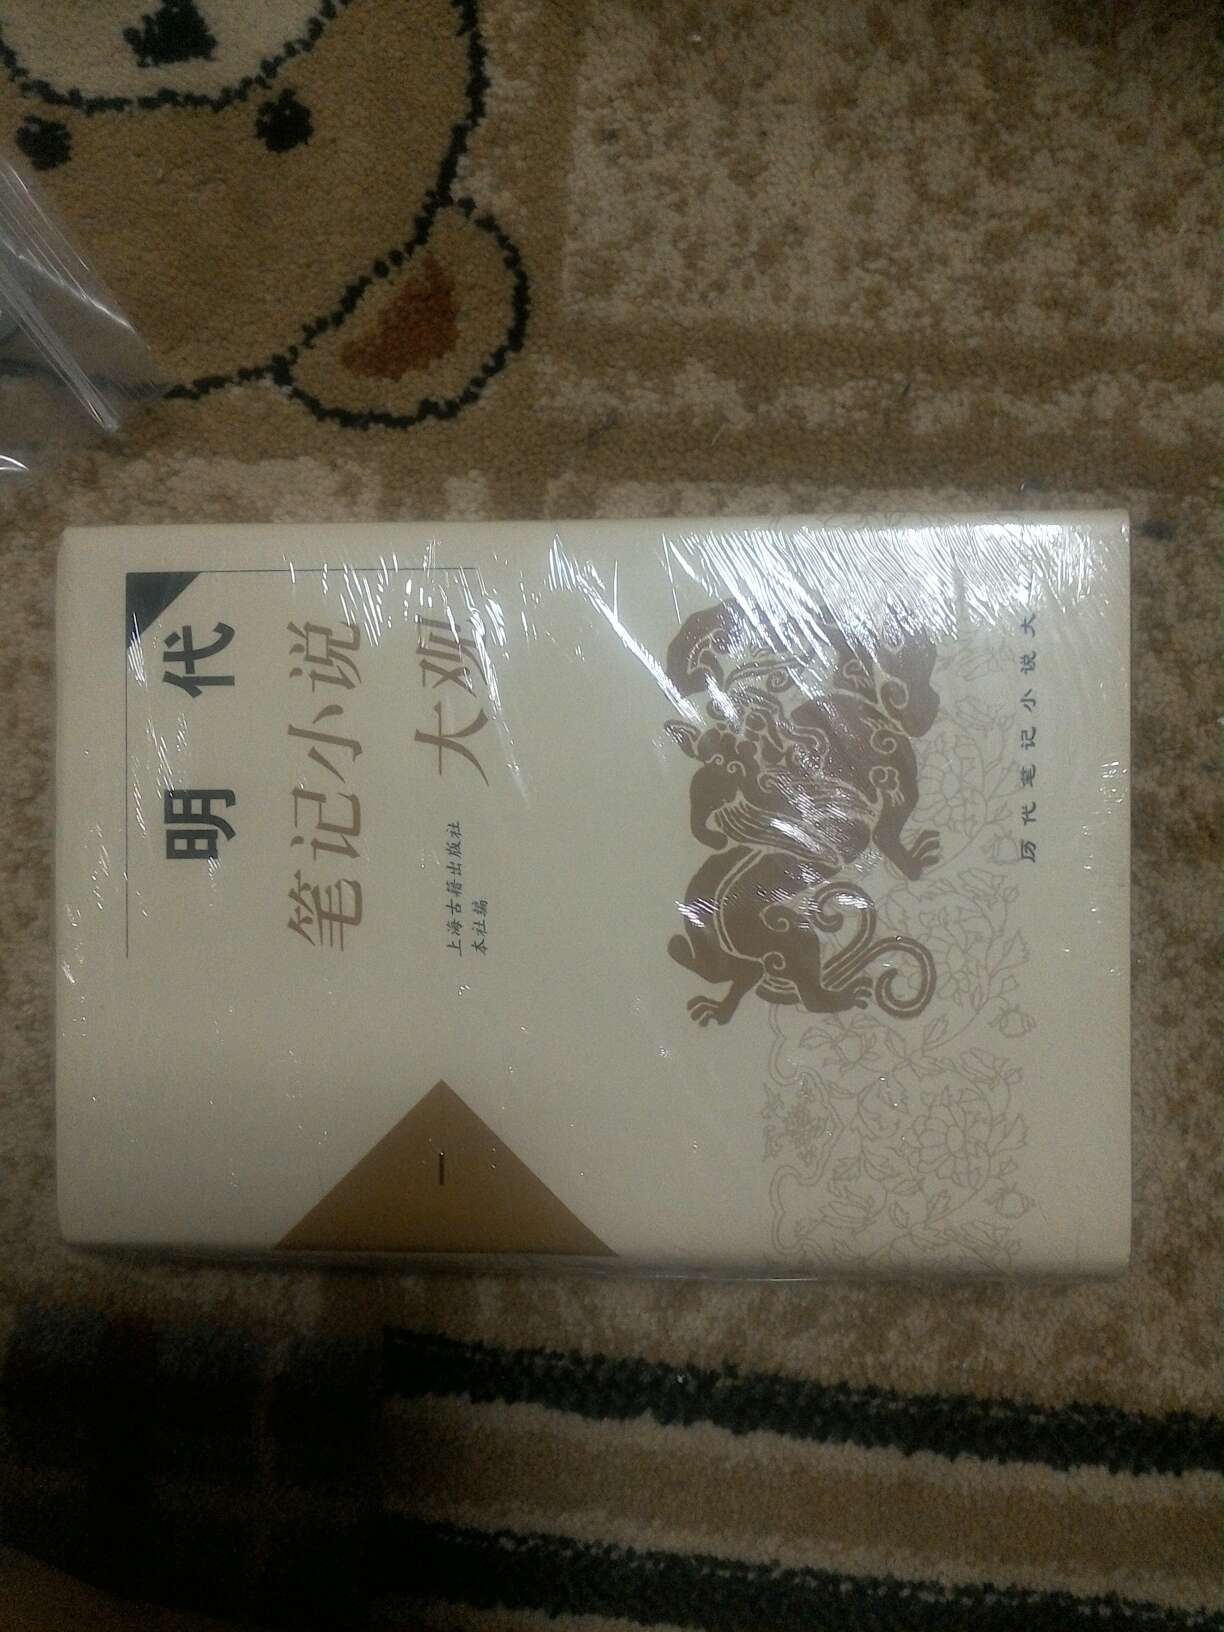 上海古籍出版，经典中的经典，一套全部收齐。。。。。书很不错。纸张质量和包装有待提升。